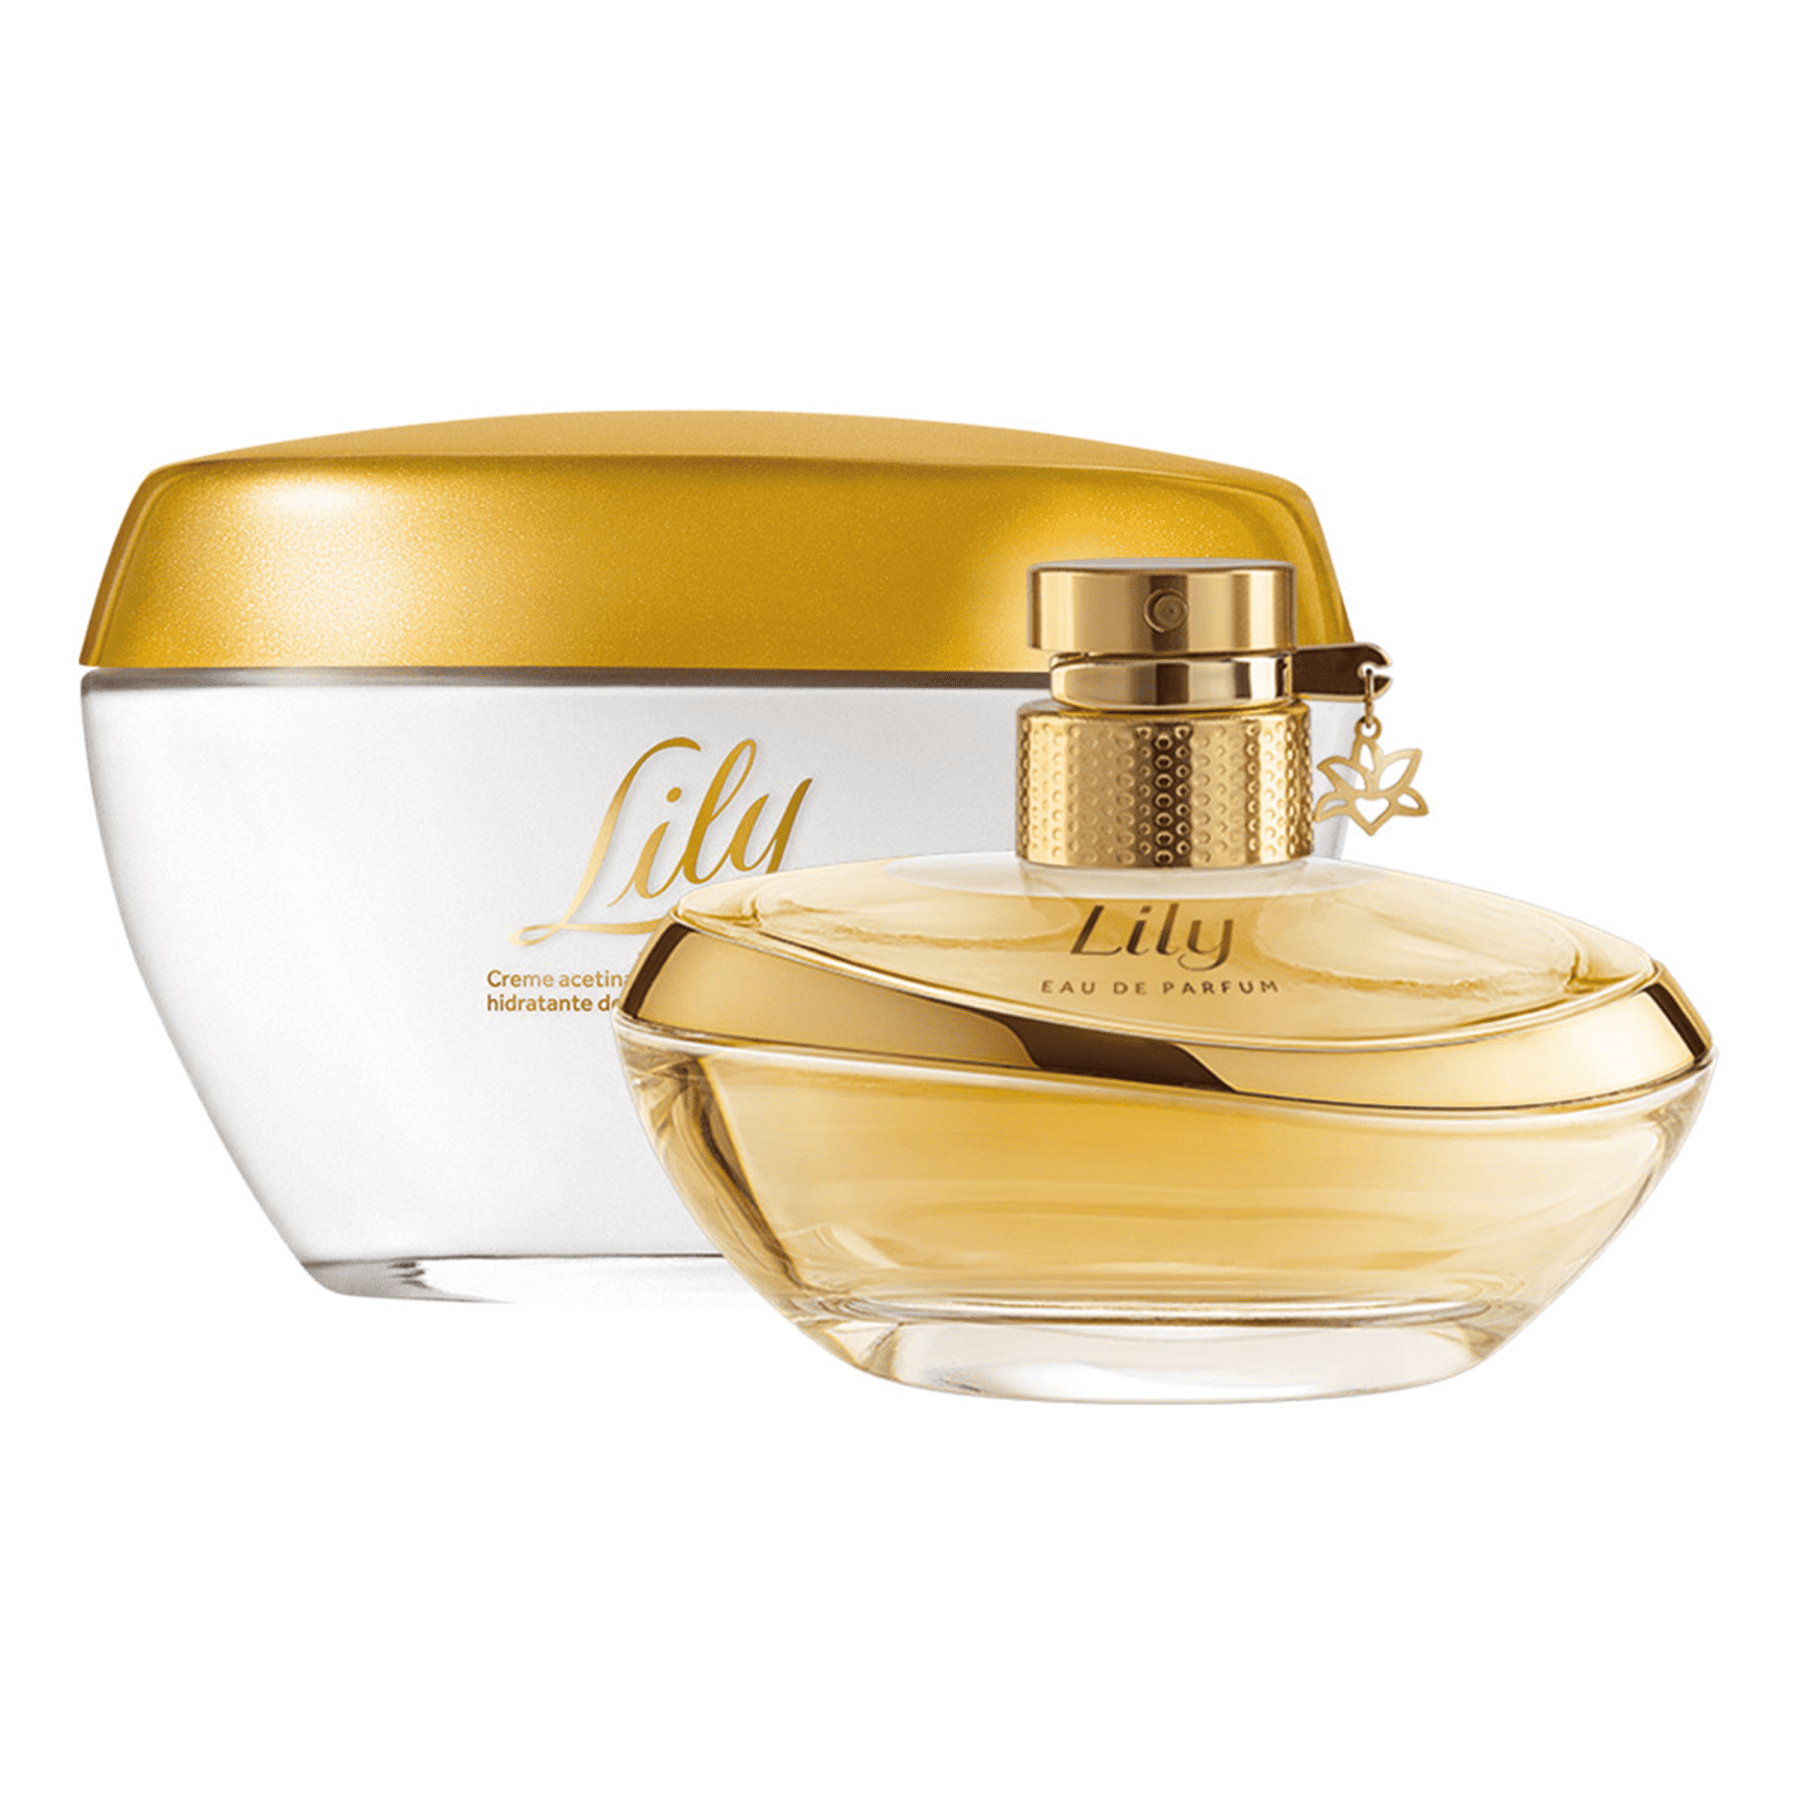 Kit Lily: Eau De Parfum + Cream Moisturizing Cream Body Deodorant - o Boticario